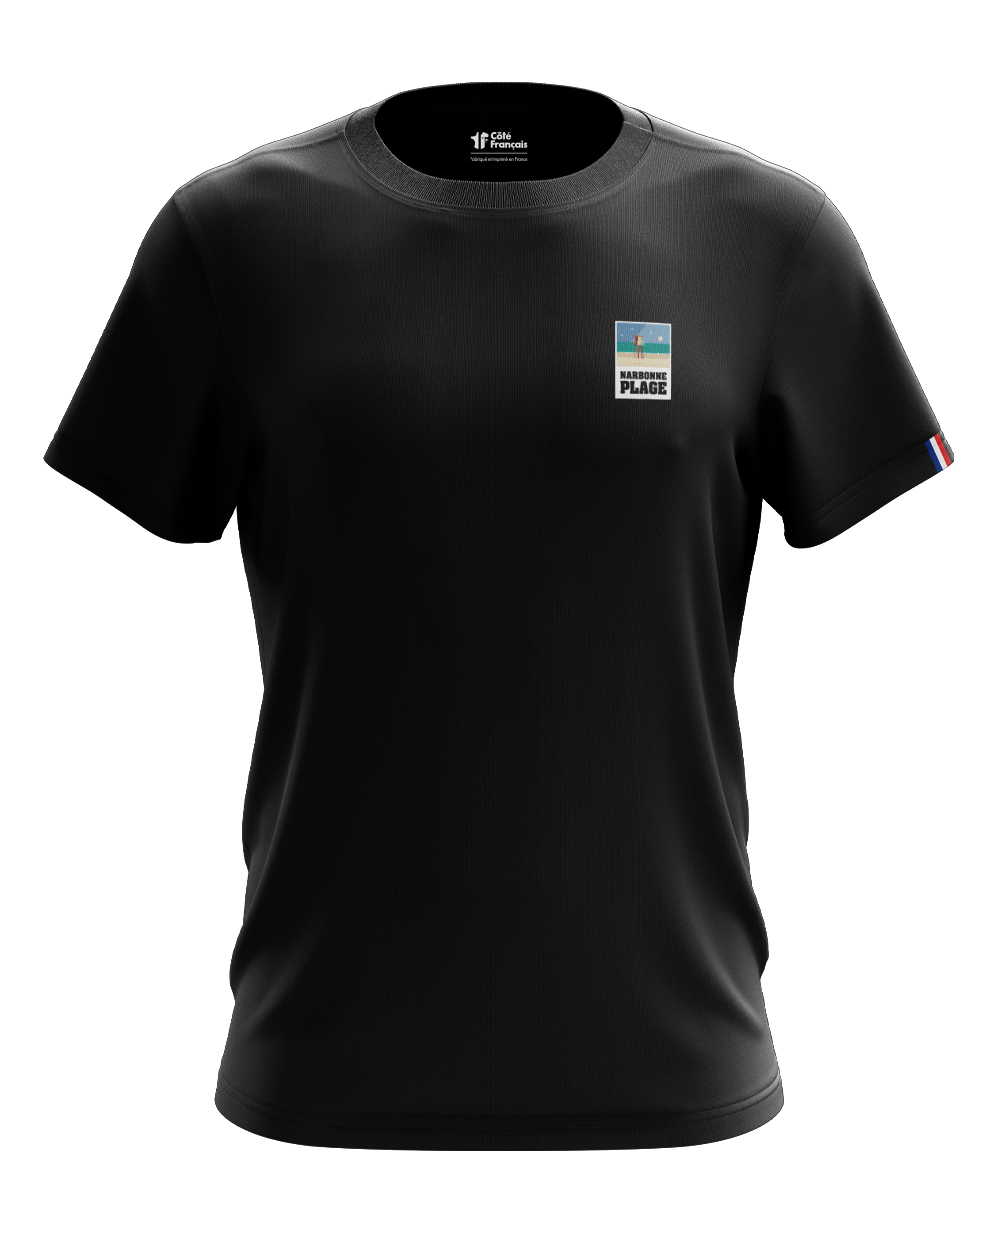 T-Shirt "Narbonne plage" - noir